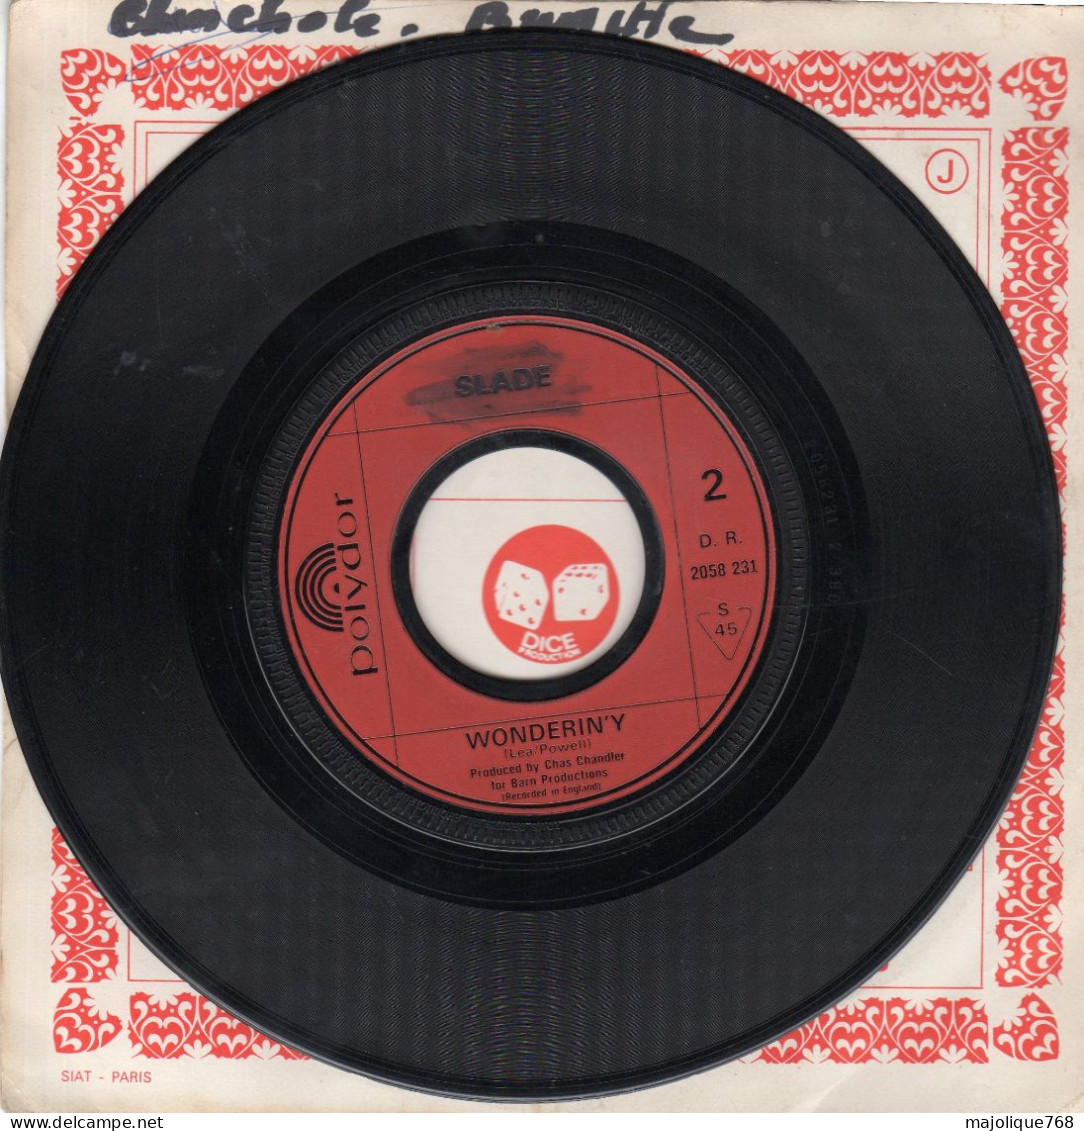 Disque De Slade - Take Me Bak'ome - Polydor 2058 231 - France 1972 - Rock